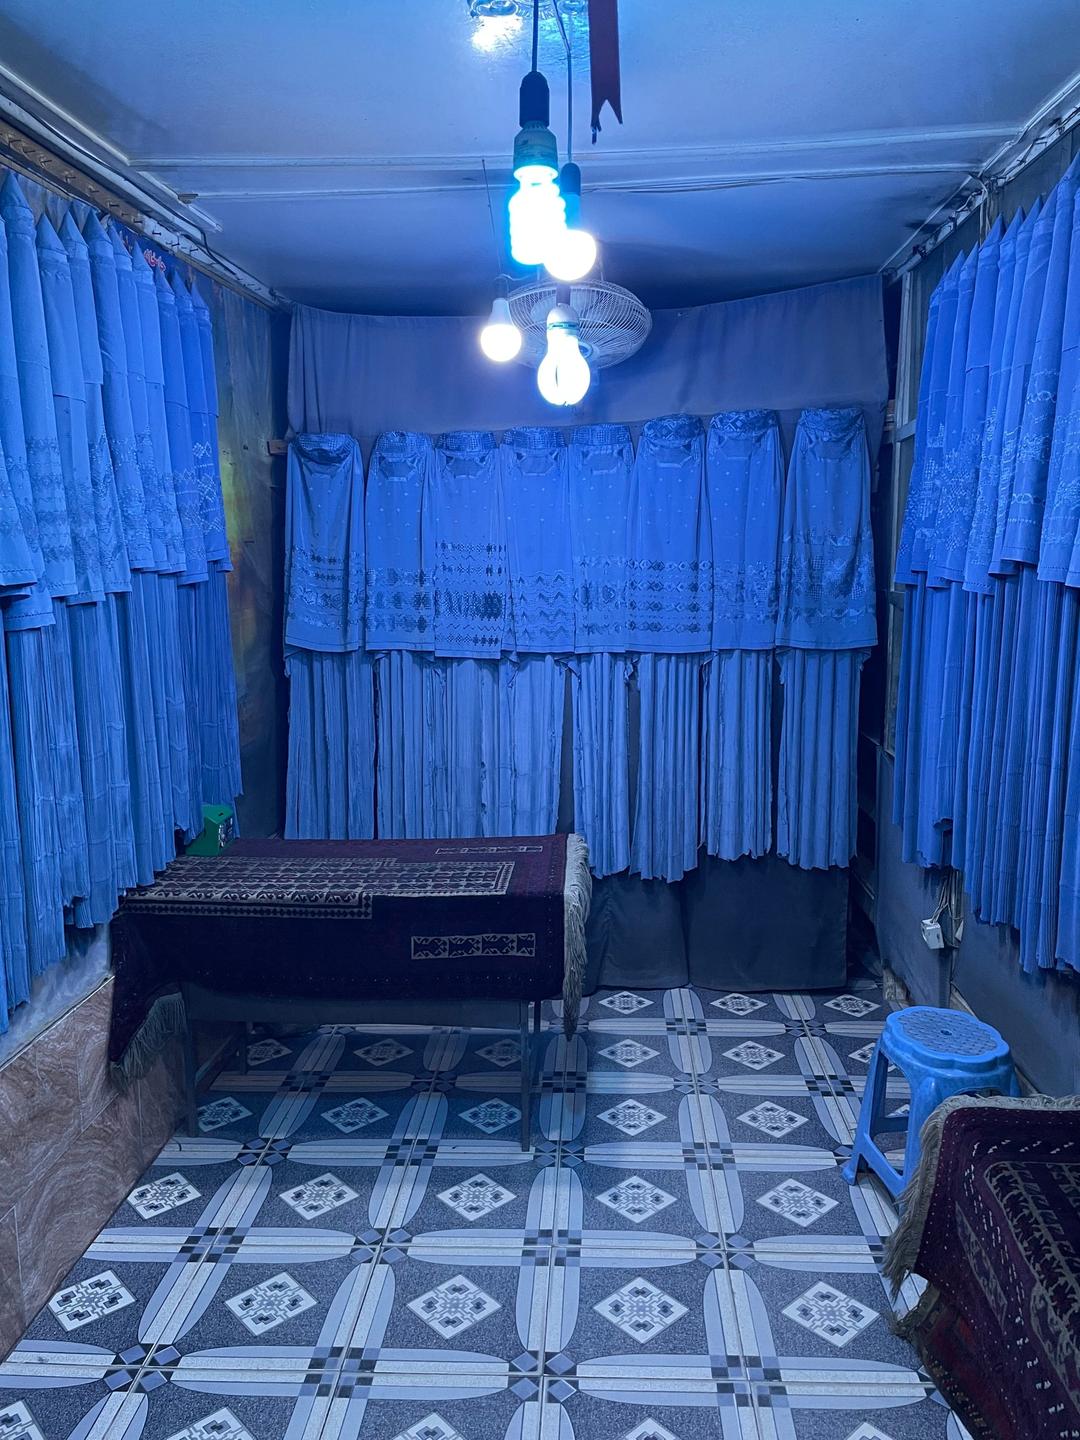 Ein rechteckiger schummrig beleuchteter Raum, der von allen Seiten von dunkelblauen hängenden Burkas eingerahmt wird.